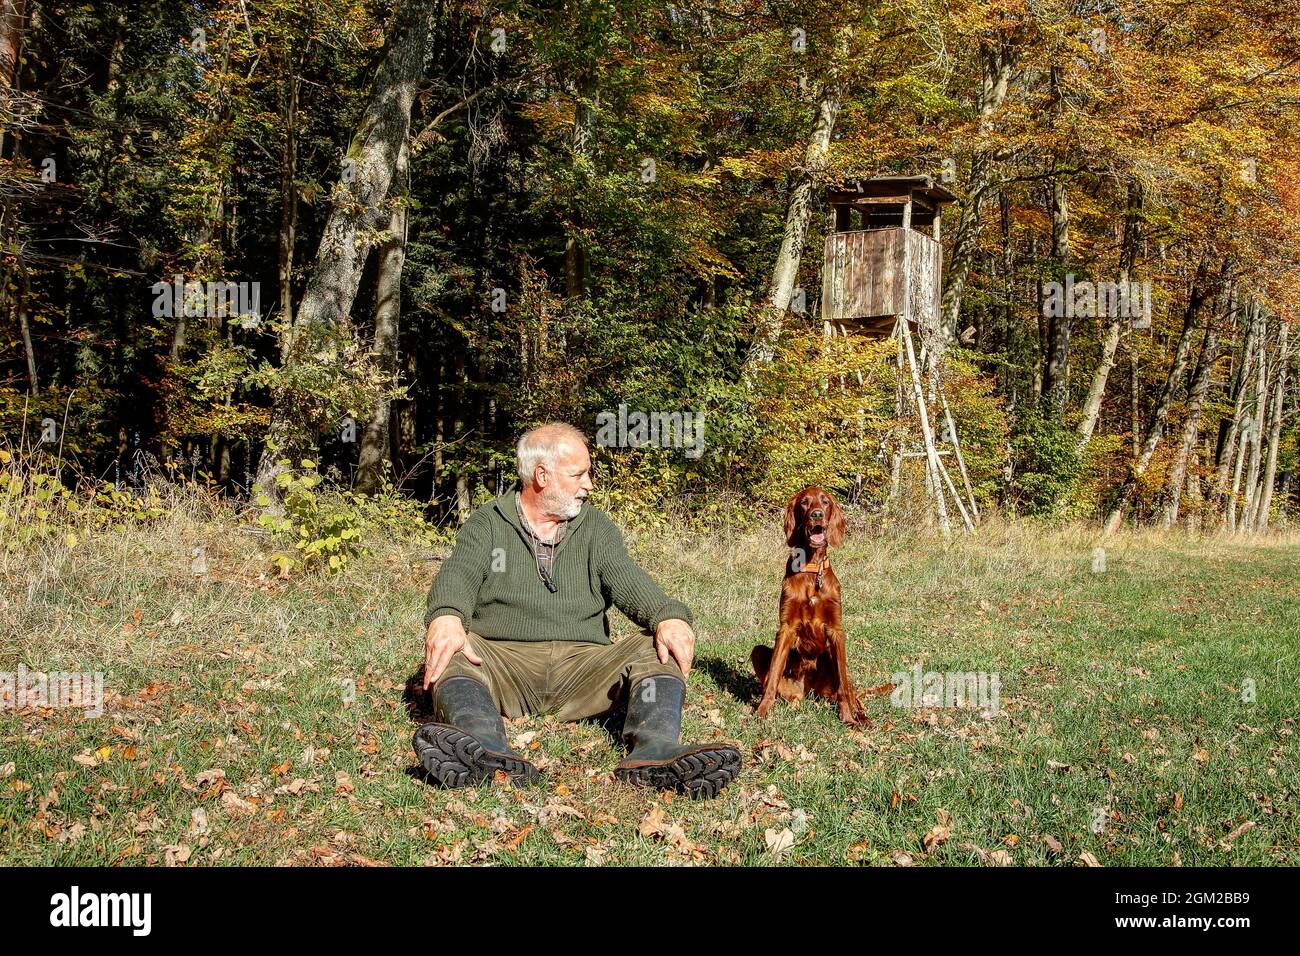 Au cours d'un après-midi ensoleillé en automne, un chasseur est assis avec son chien de chasse au bord de la forêt colorée au soleil, devant la chaire de chasse. Banque D'Images